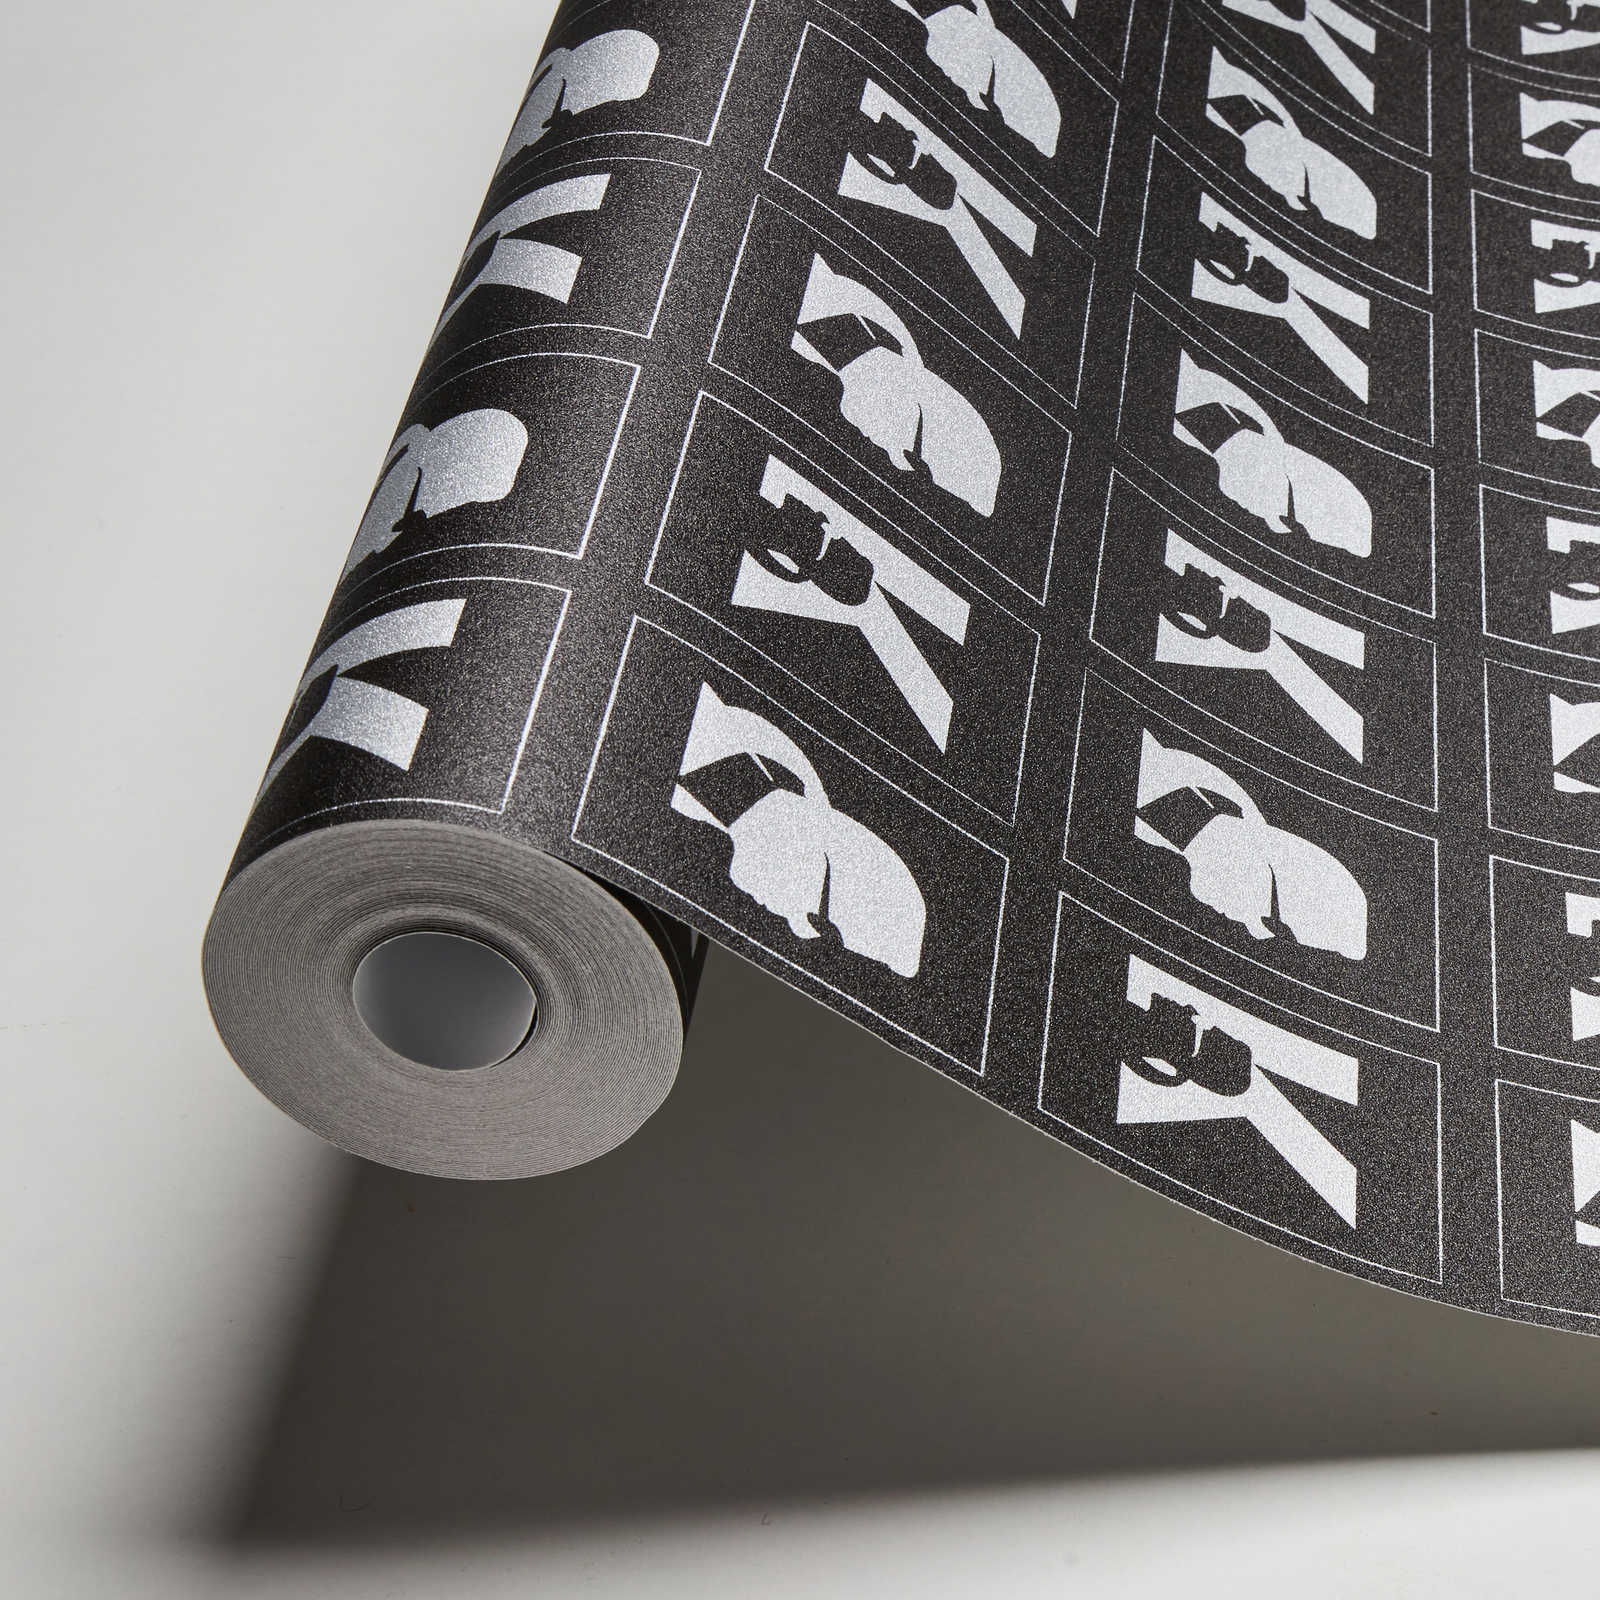             Karl LAGERFELD non-woven wallpaper emblem pattern - metallic, black
        